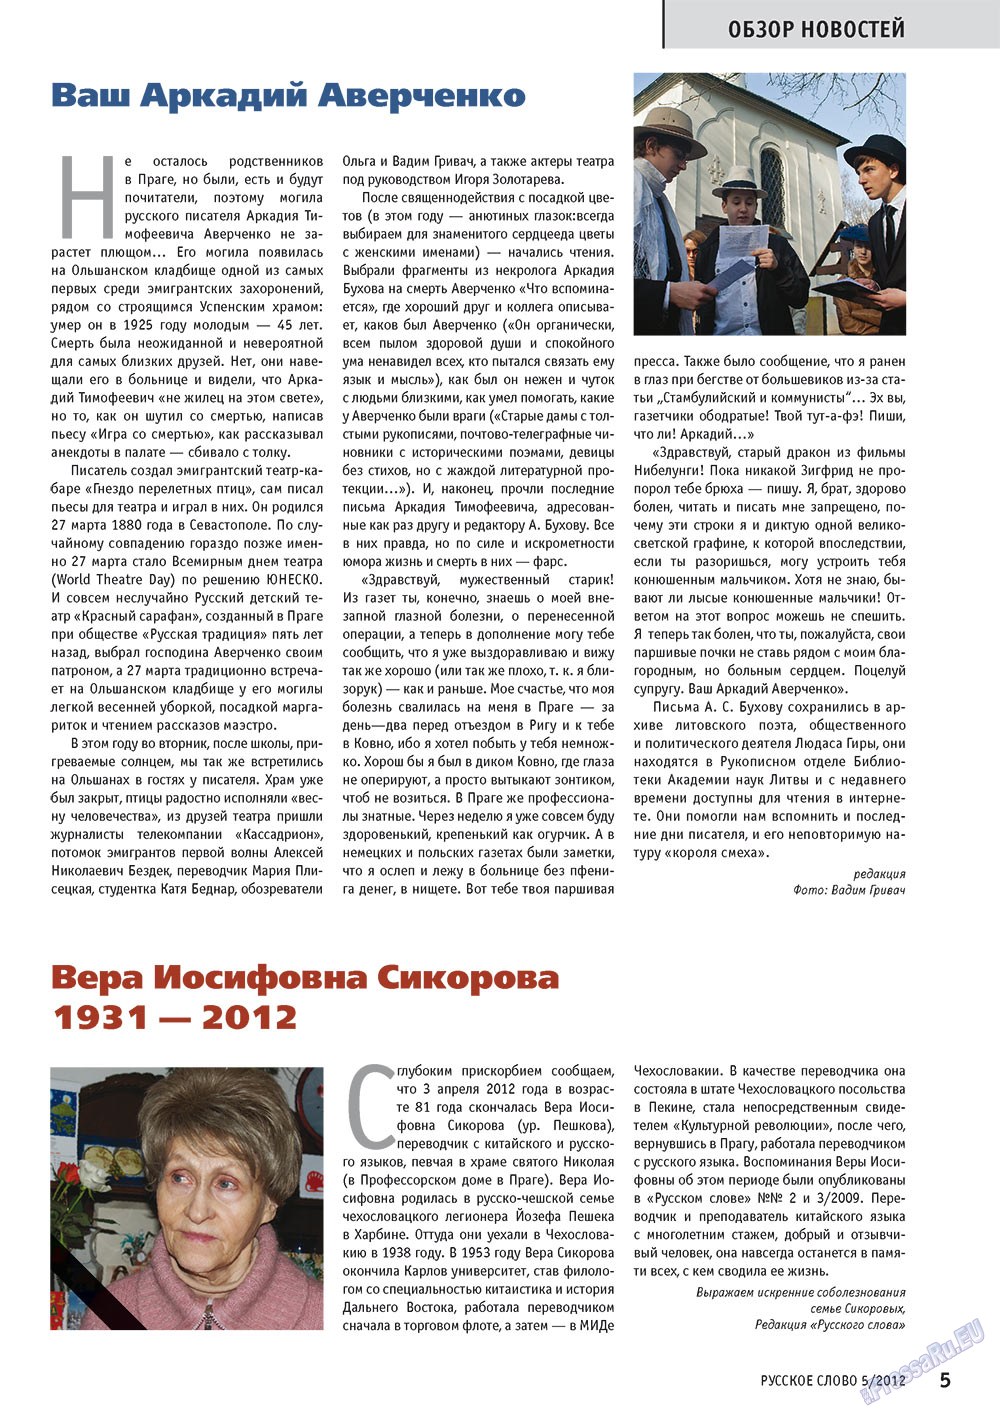 Русское слово, журнал. 2012 №5 стр.5